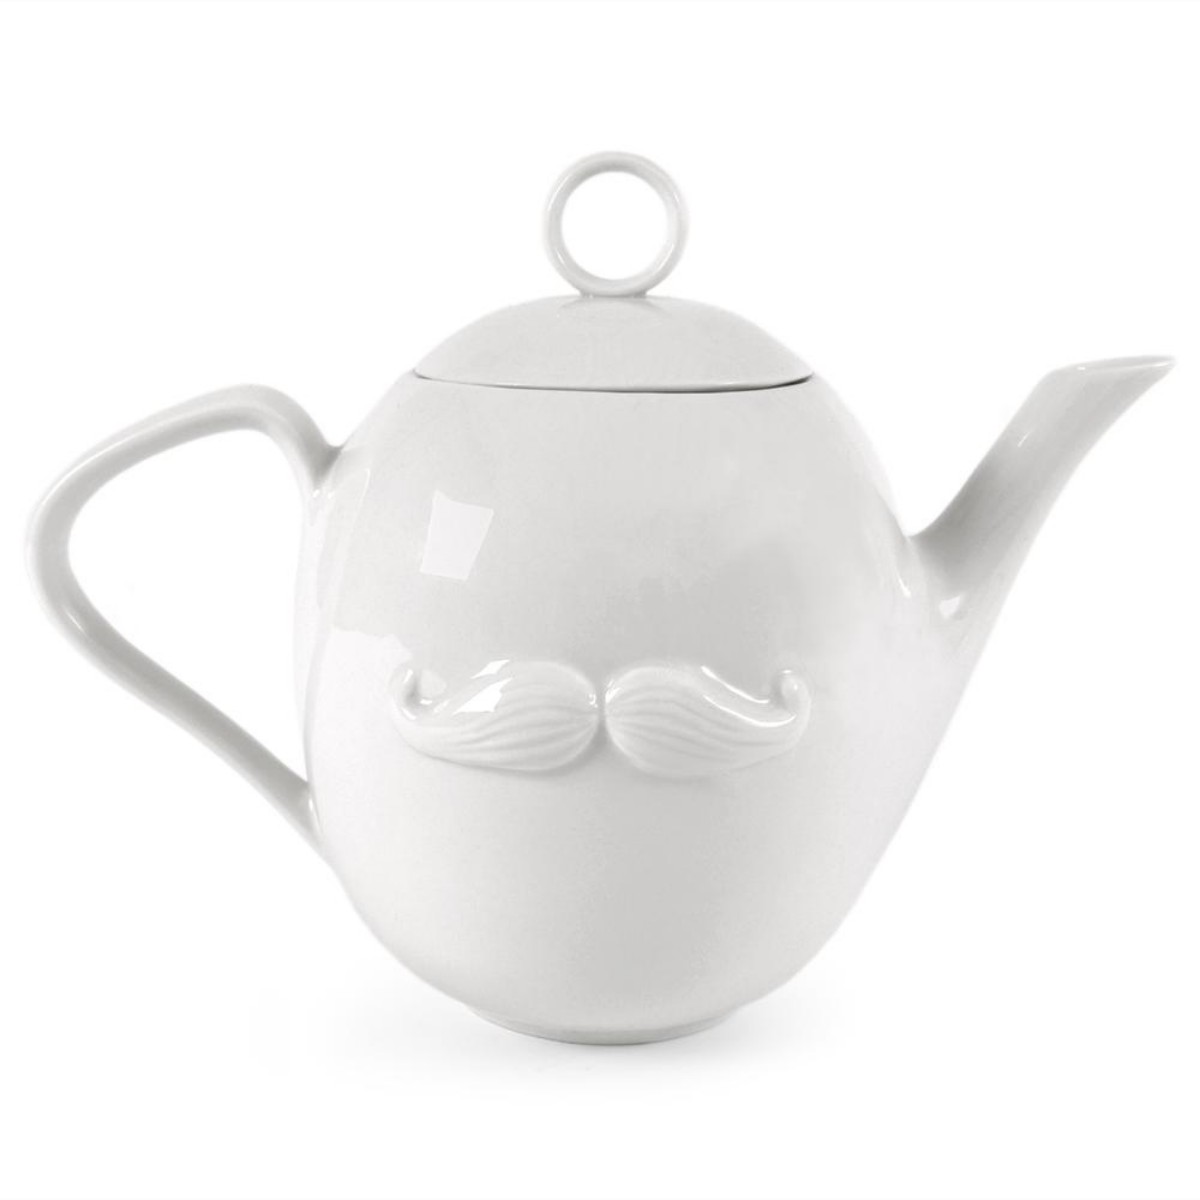 Jonathan Adler I Muse Reversible Teapot